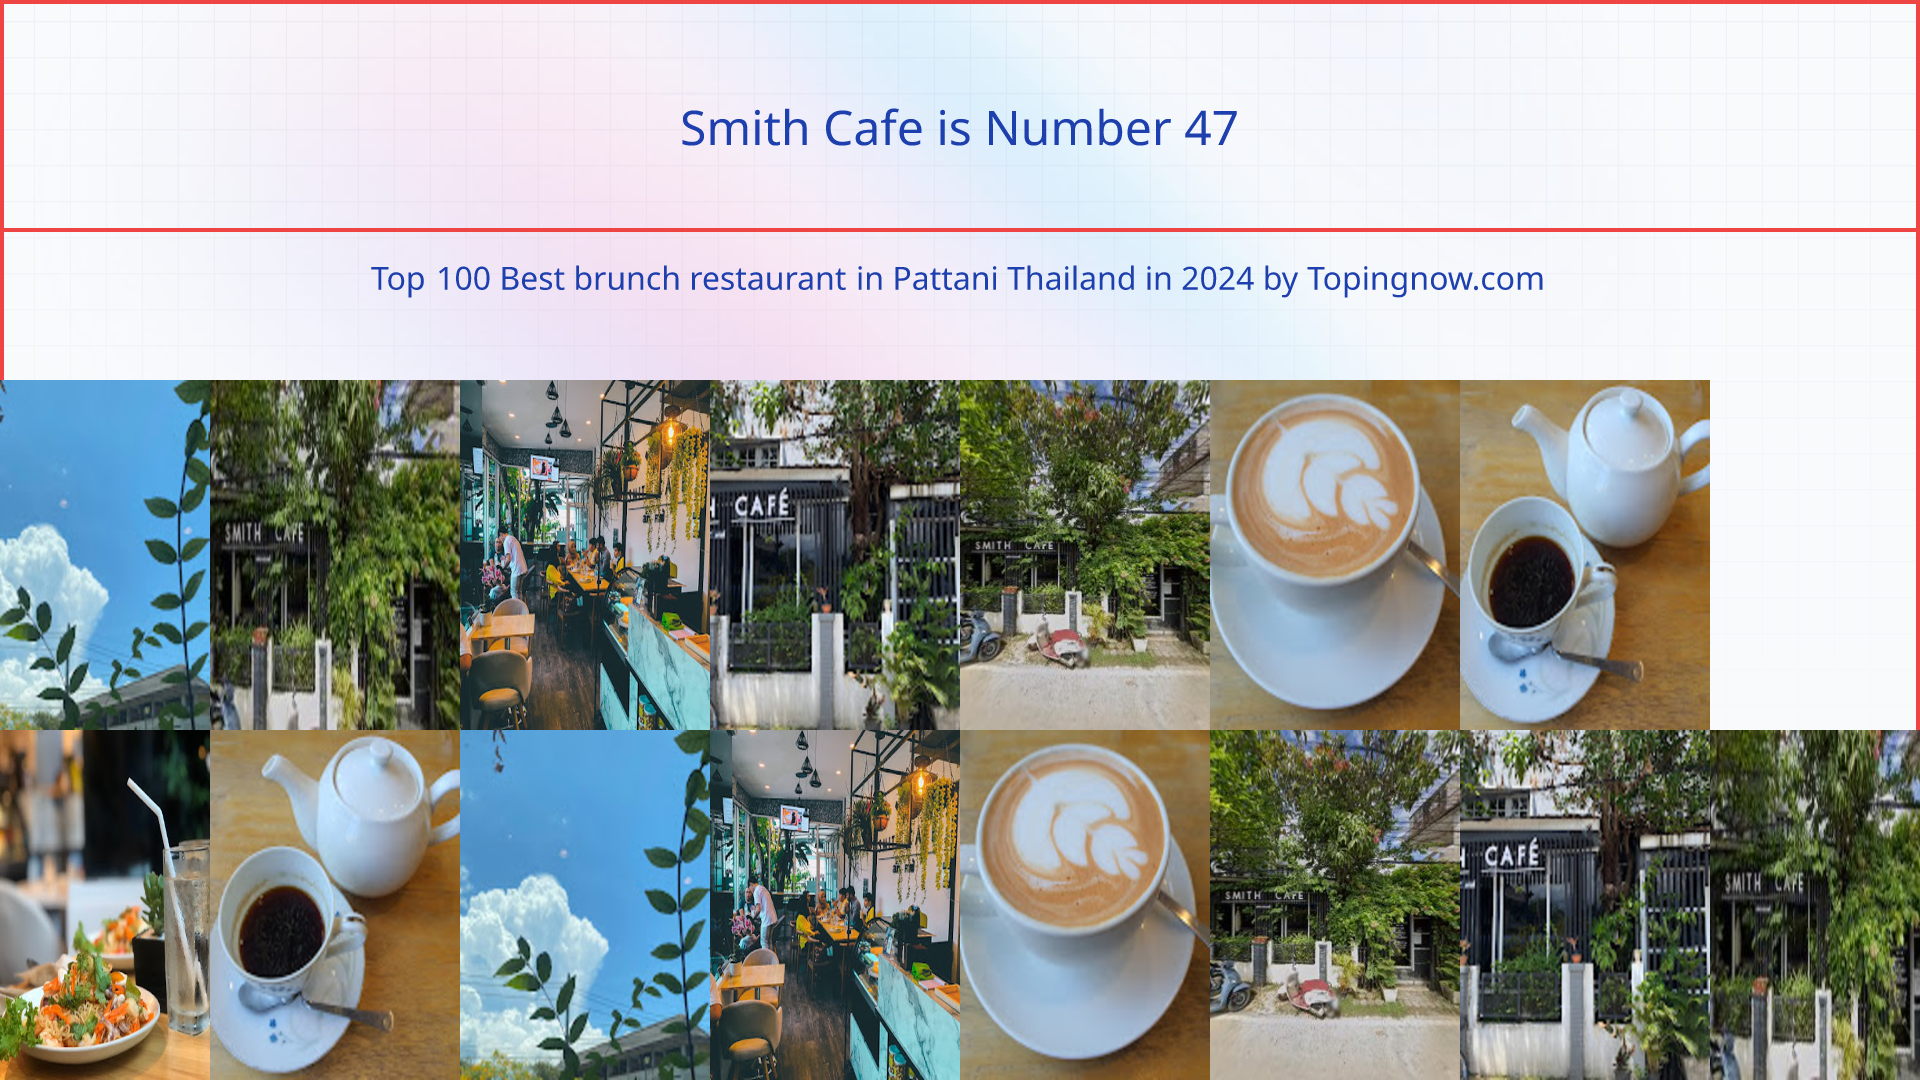 Smith Cafe: Top 100 Best brunch restaurant in Pattani Thailand in 2024